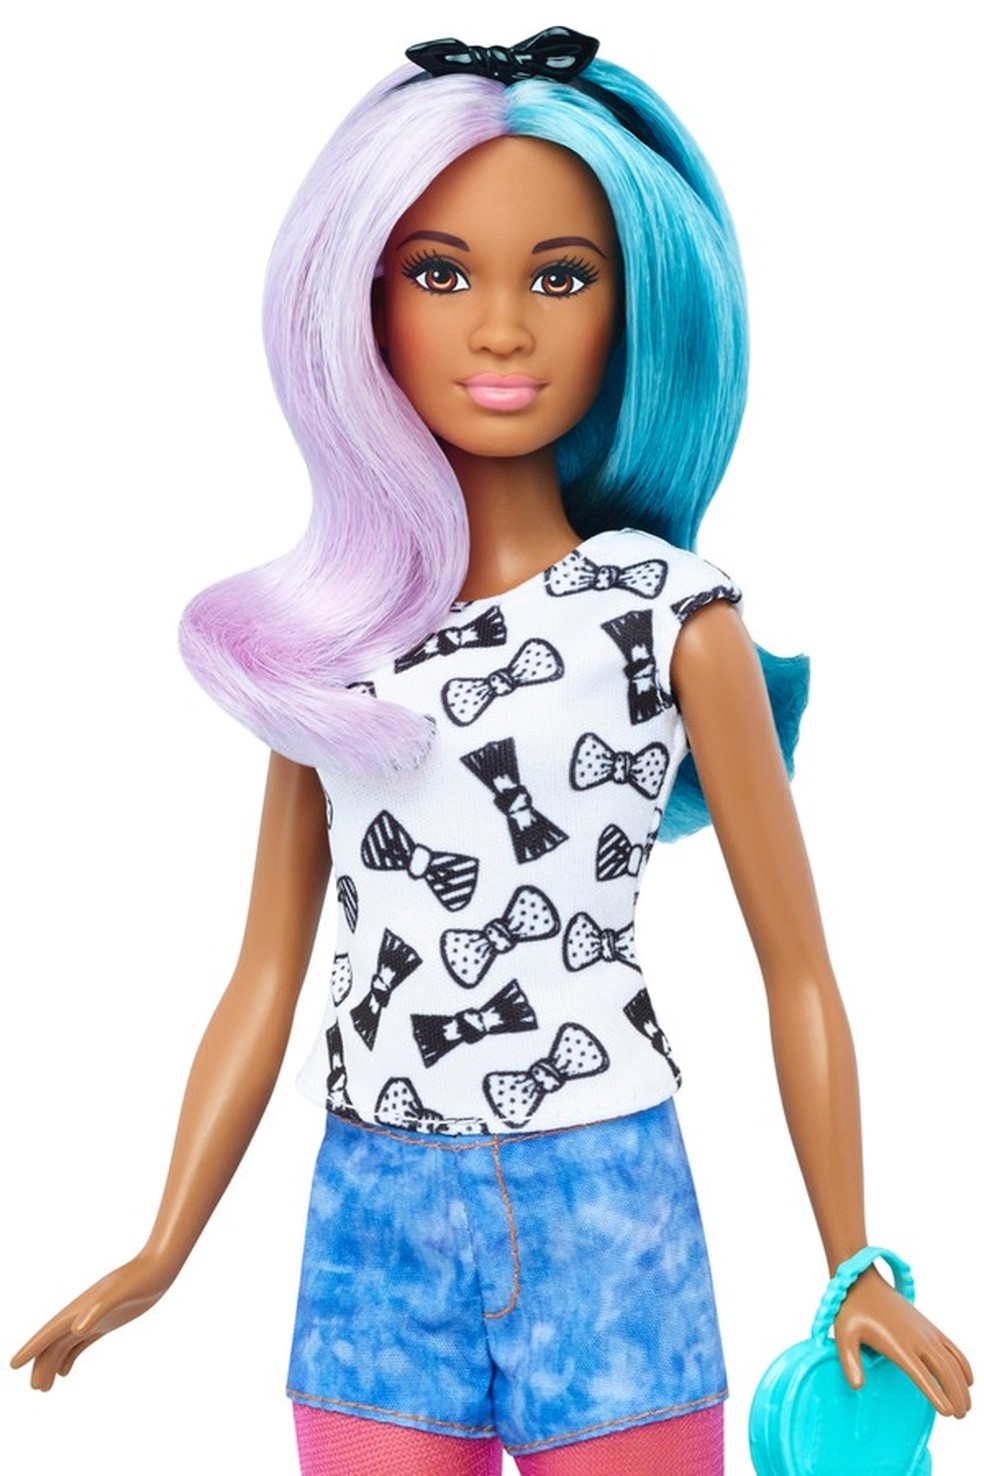 Designer da Barbie conta alguns segredos da boneca mais amada do mundo